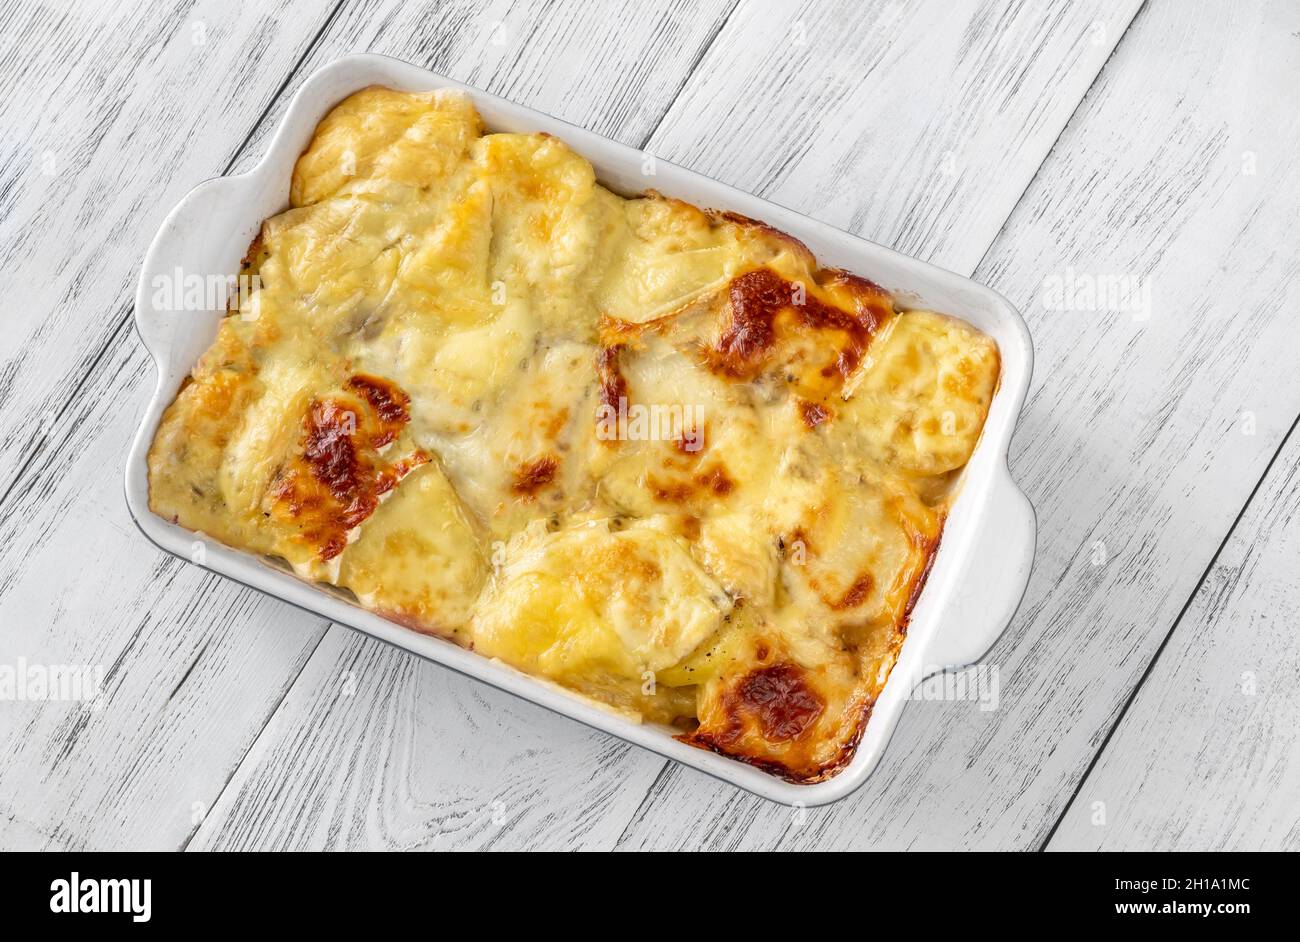 Tartiflette - un plat à la française à base de pommes de terre, de fromage reblochon, de lardons et d'oignons. Banque D'Images